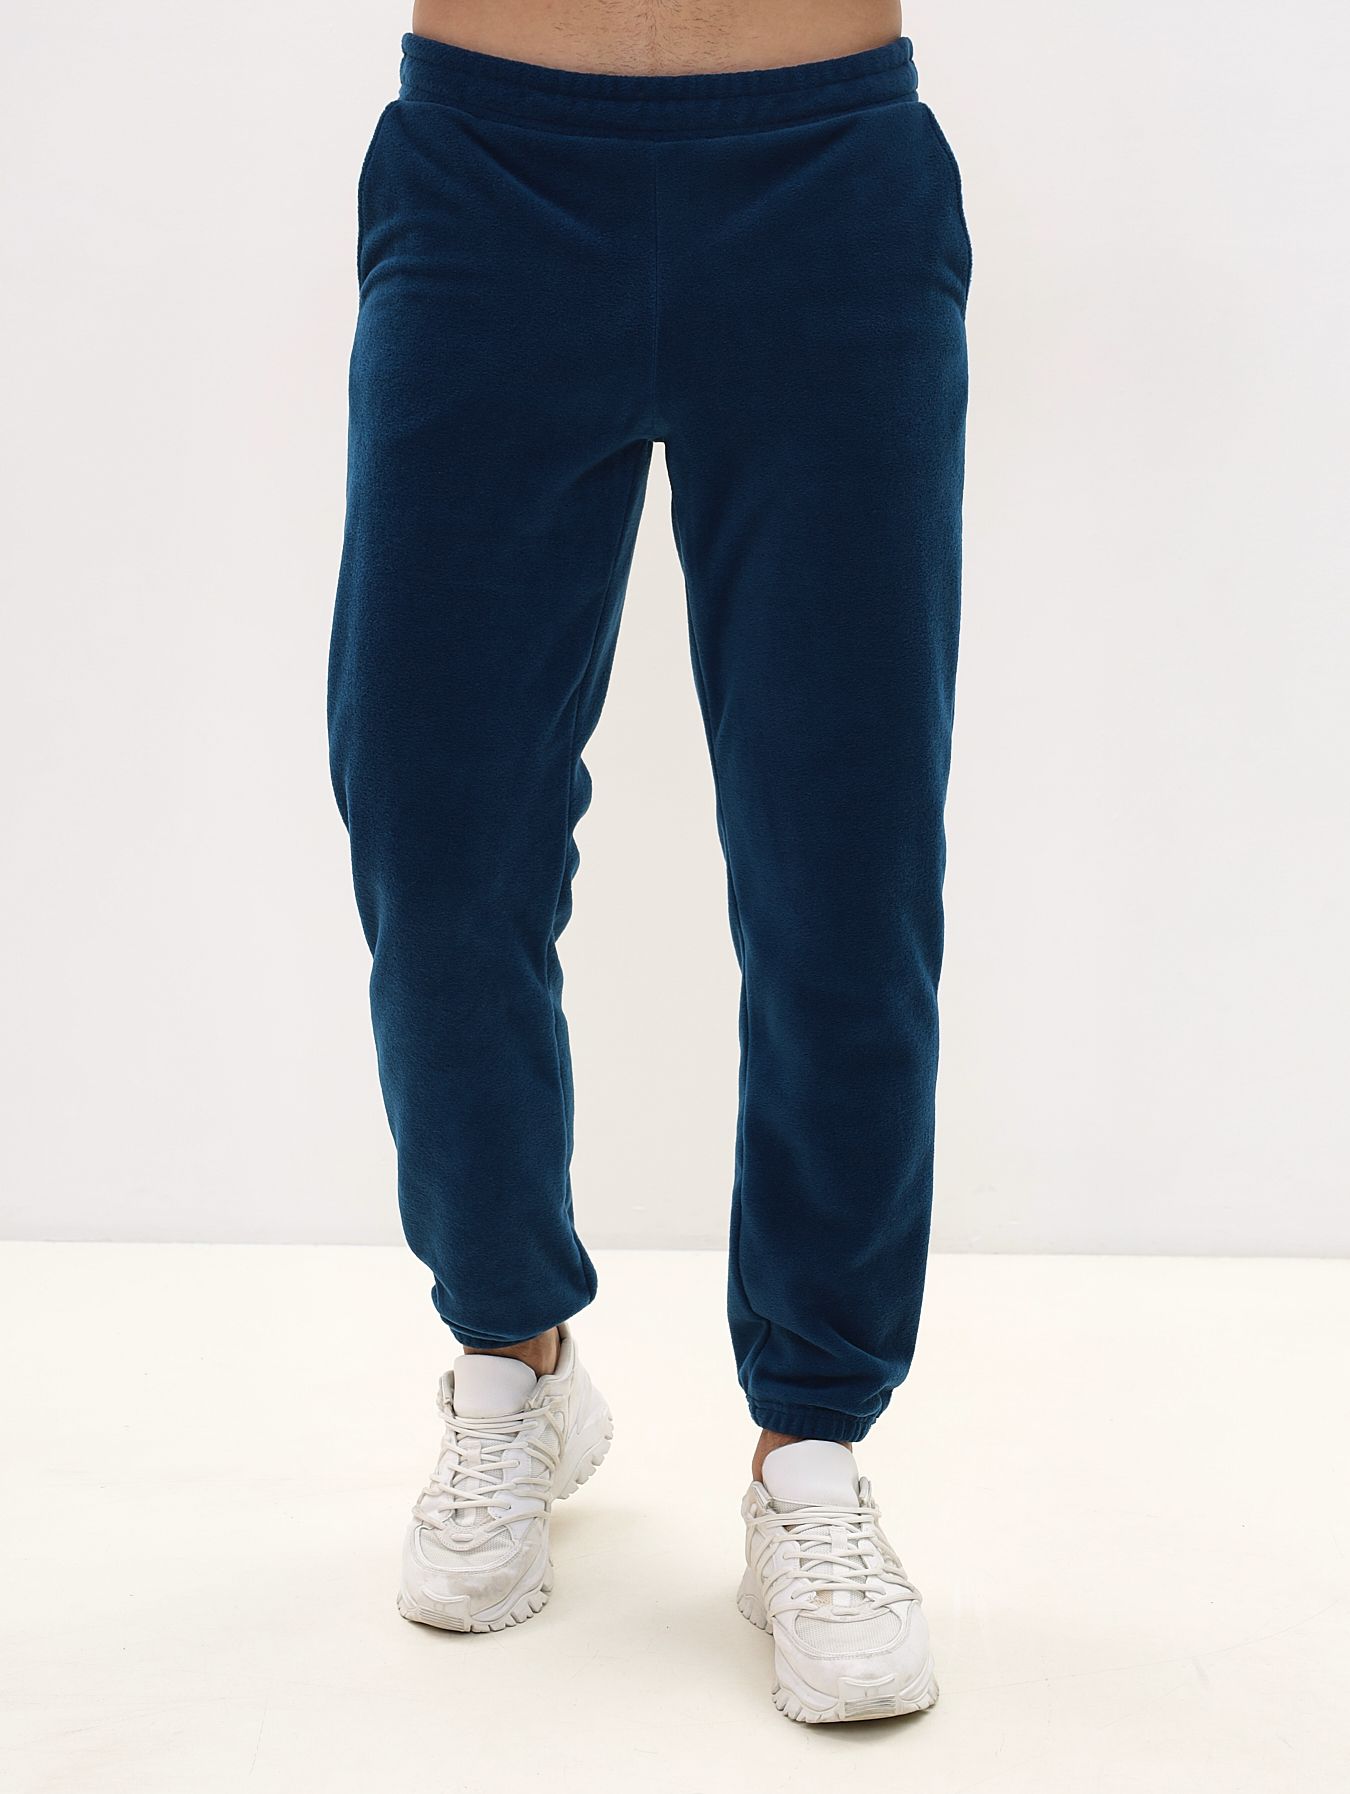 Спортивные брюки мужские MOM №1 MOM-88-3150F синие M